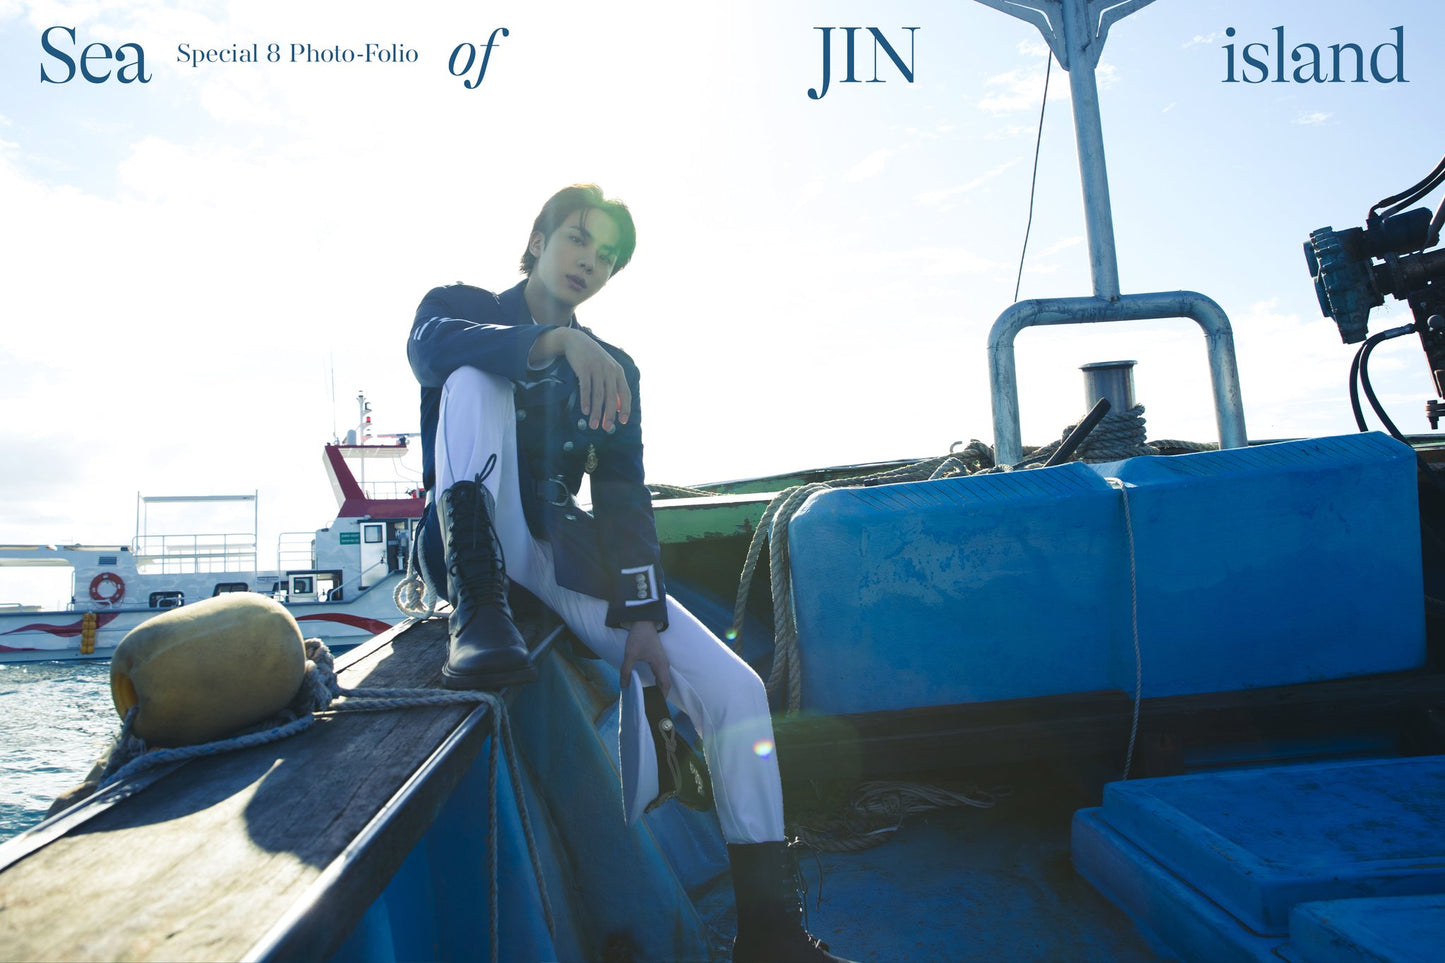 [BTS] Jin : Special 8 Photo-Folio Me, Myself, and Jin ‘Sea of JIN Island’